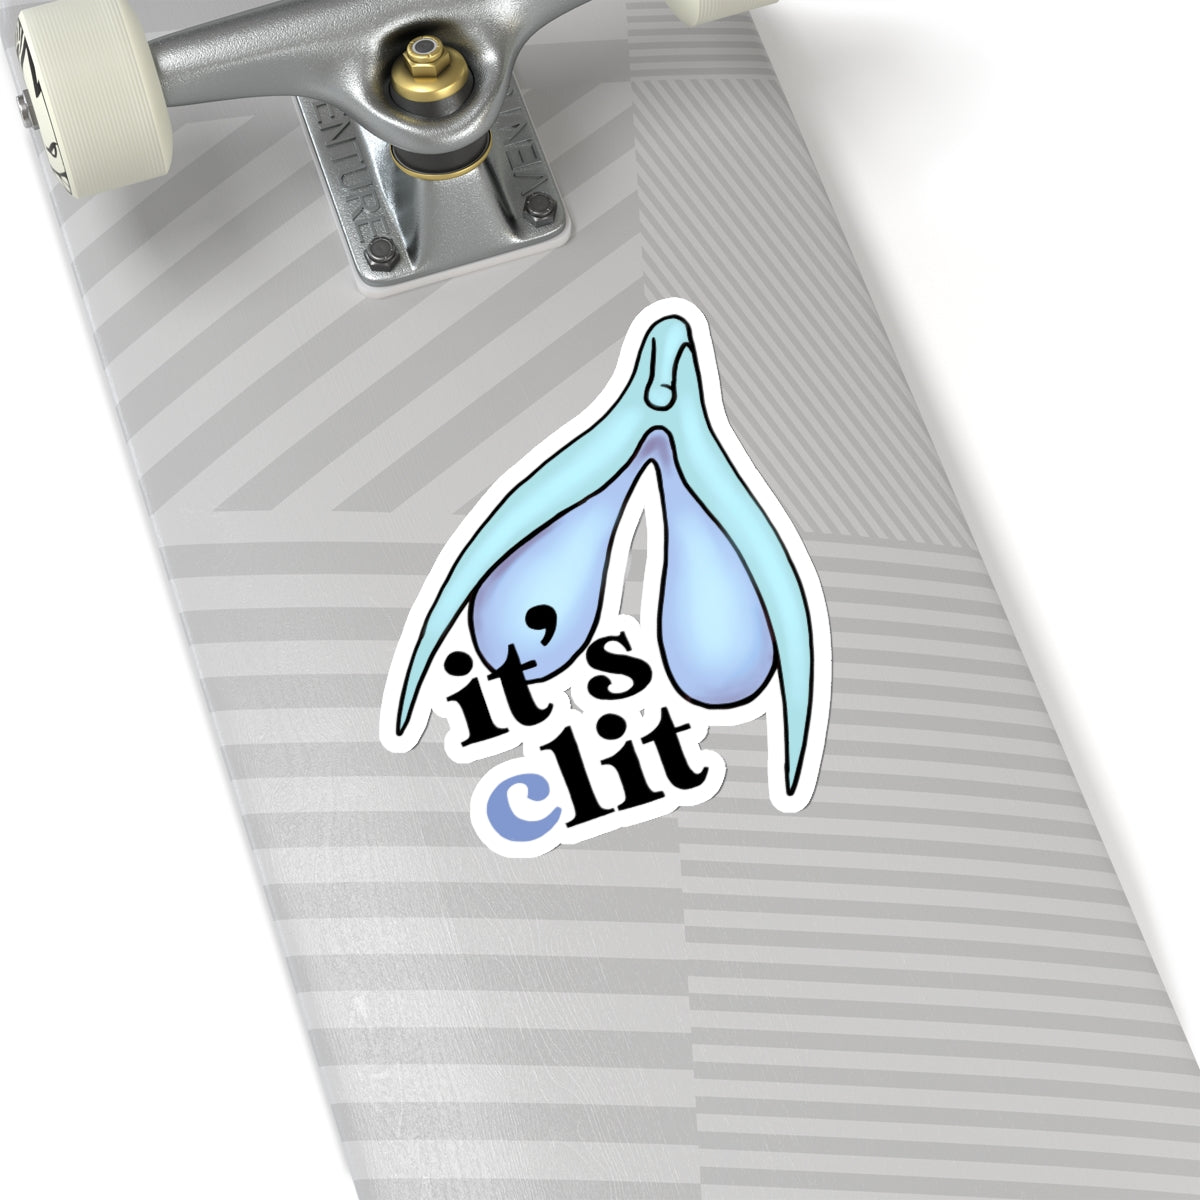 It’s (c)lit Sticker